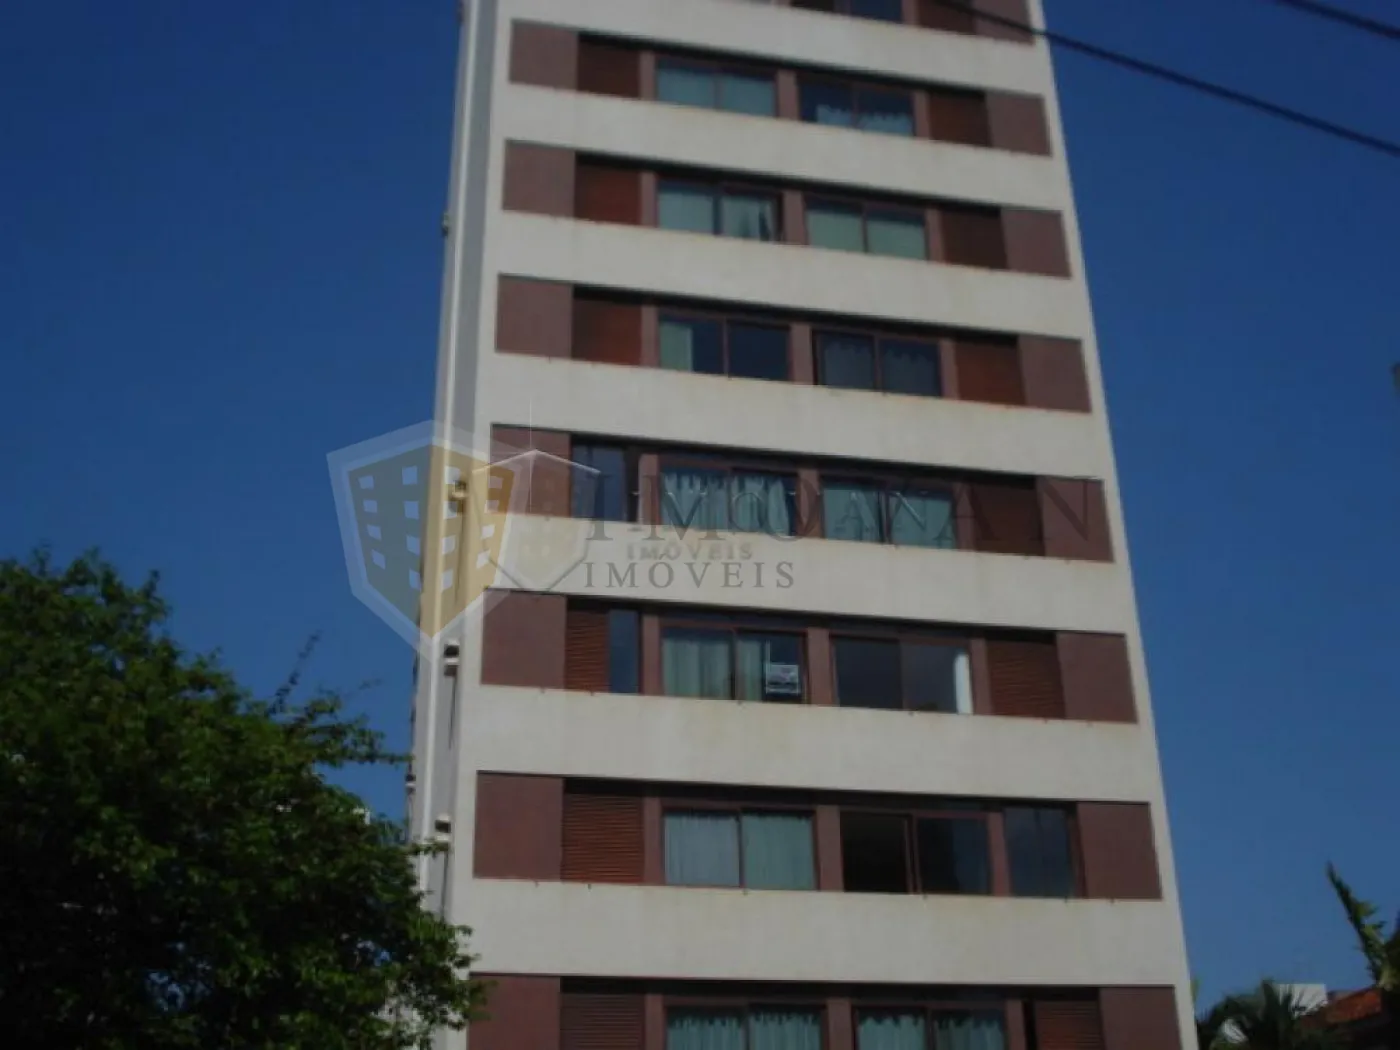 Comprar Apartamento / Padrão em Ribeirão Preto R$ 200.000,00 - Foto 4